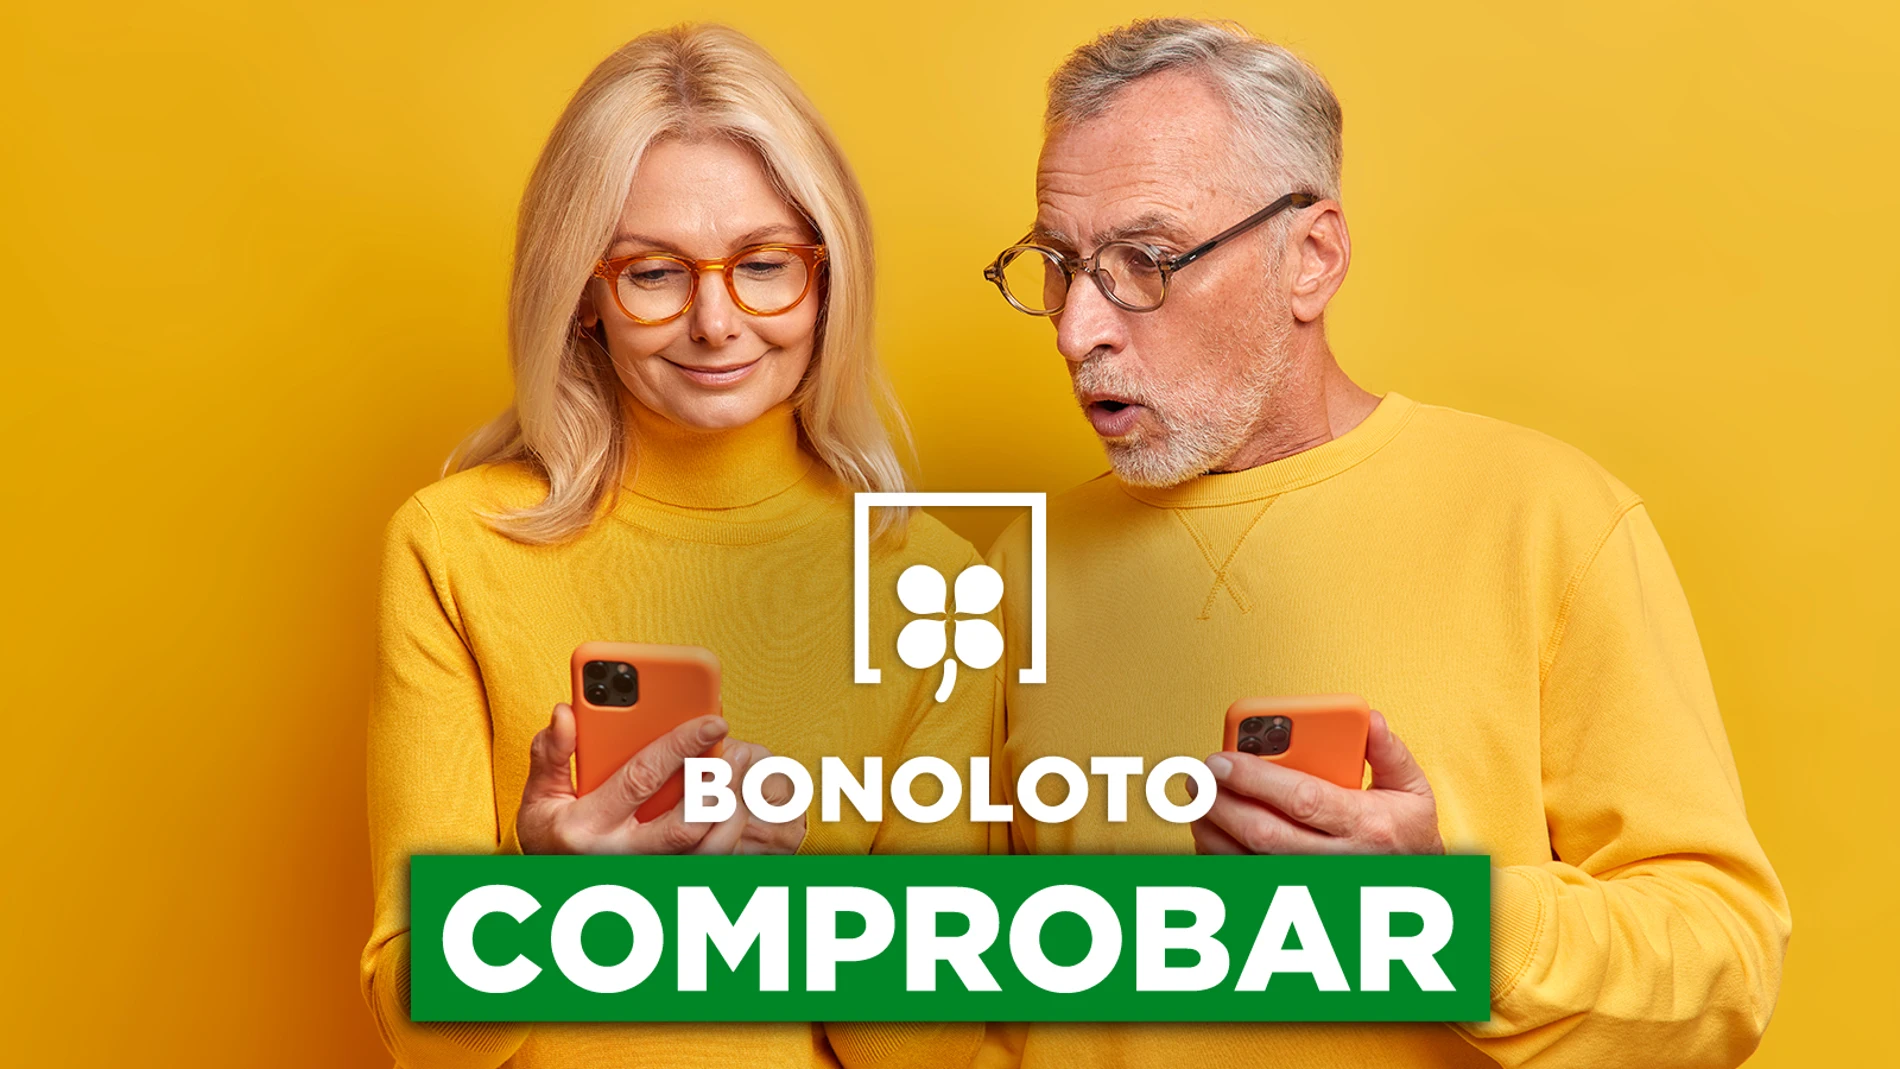 Bonoloto: comprobar hoy, viernes 24 de junio de 2022